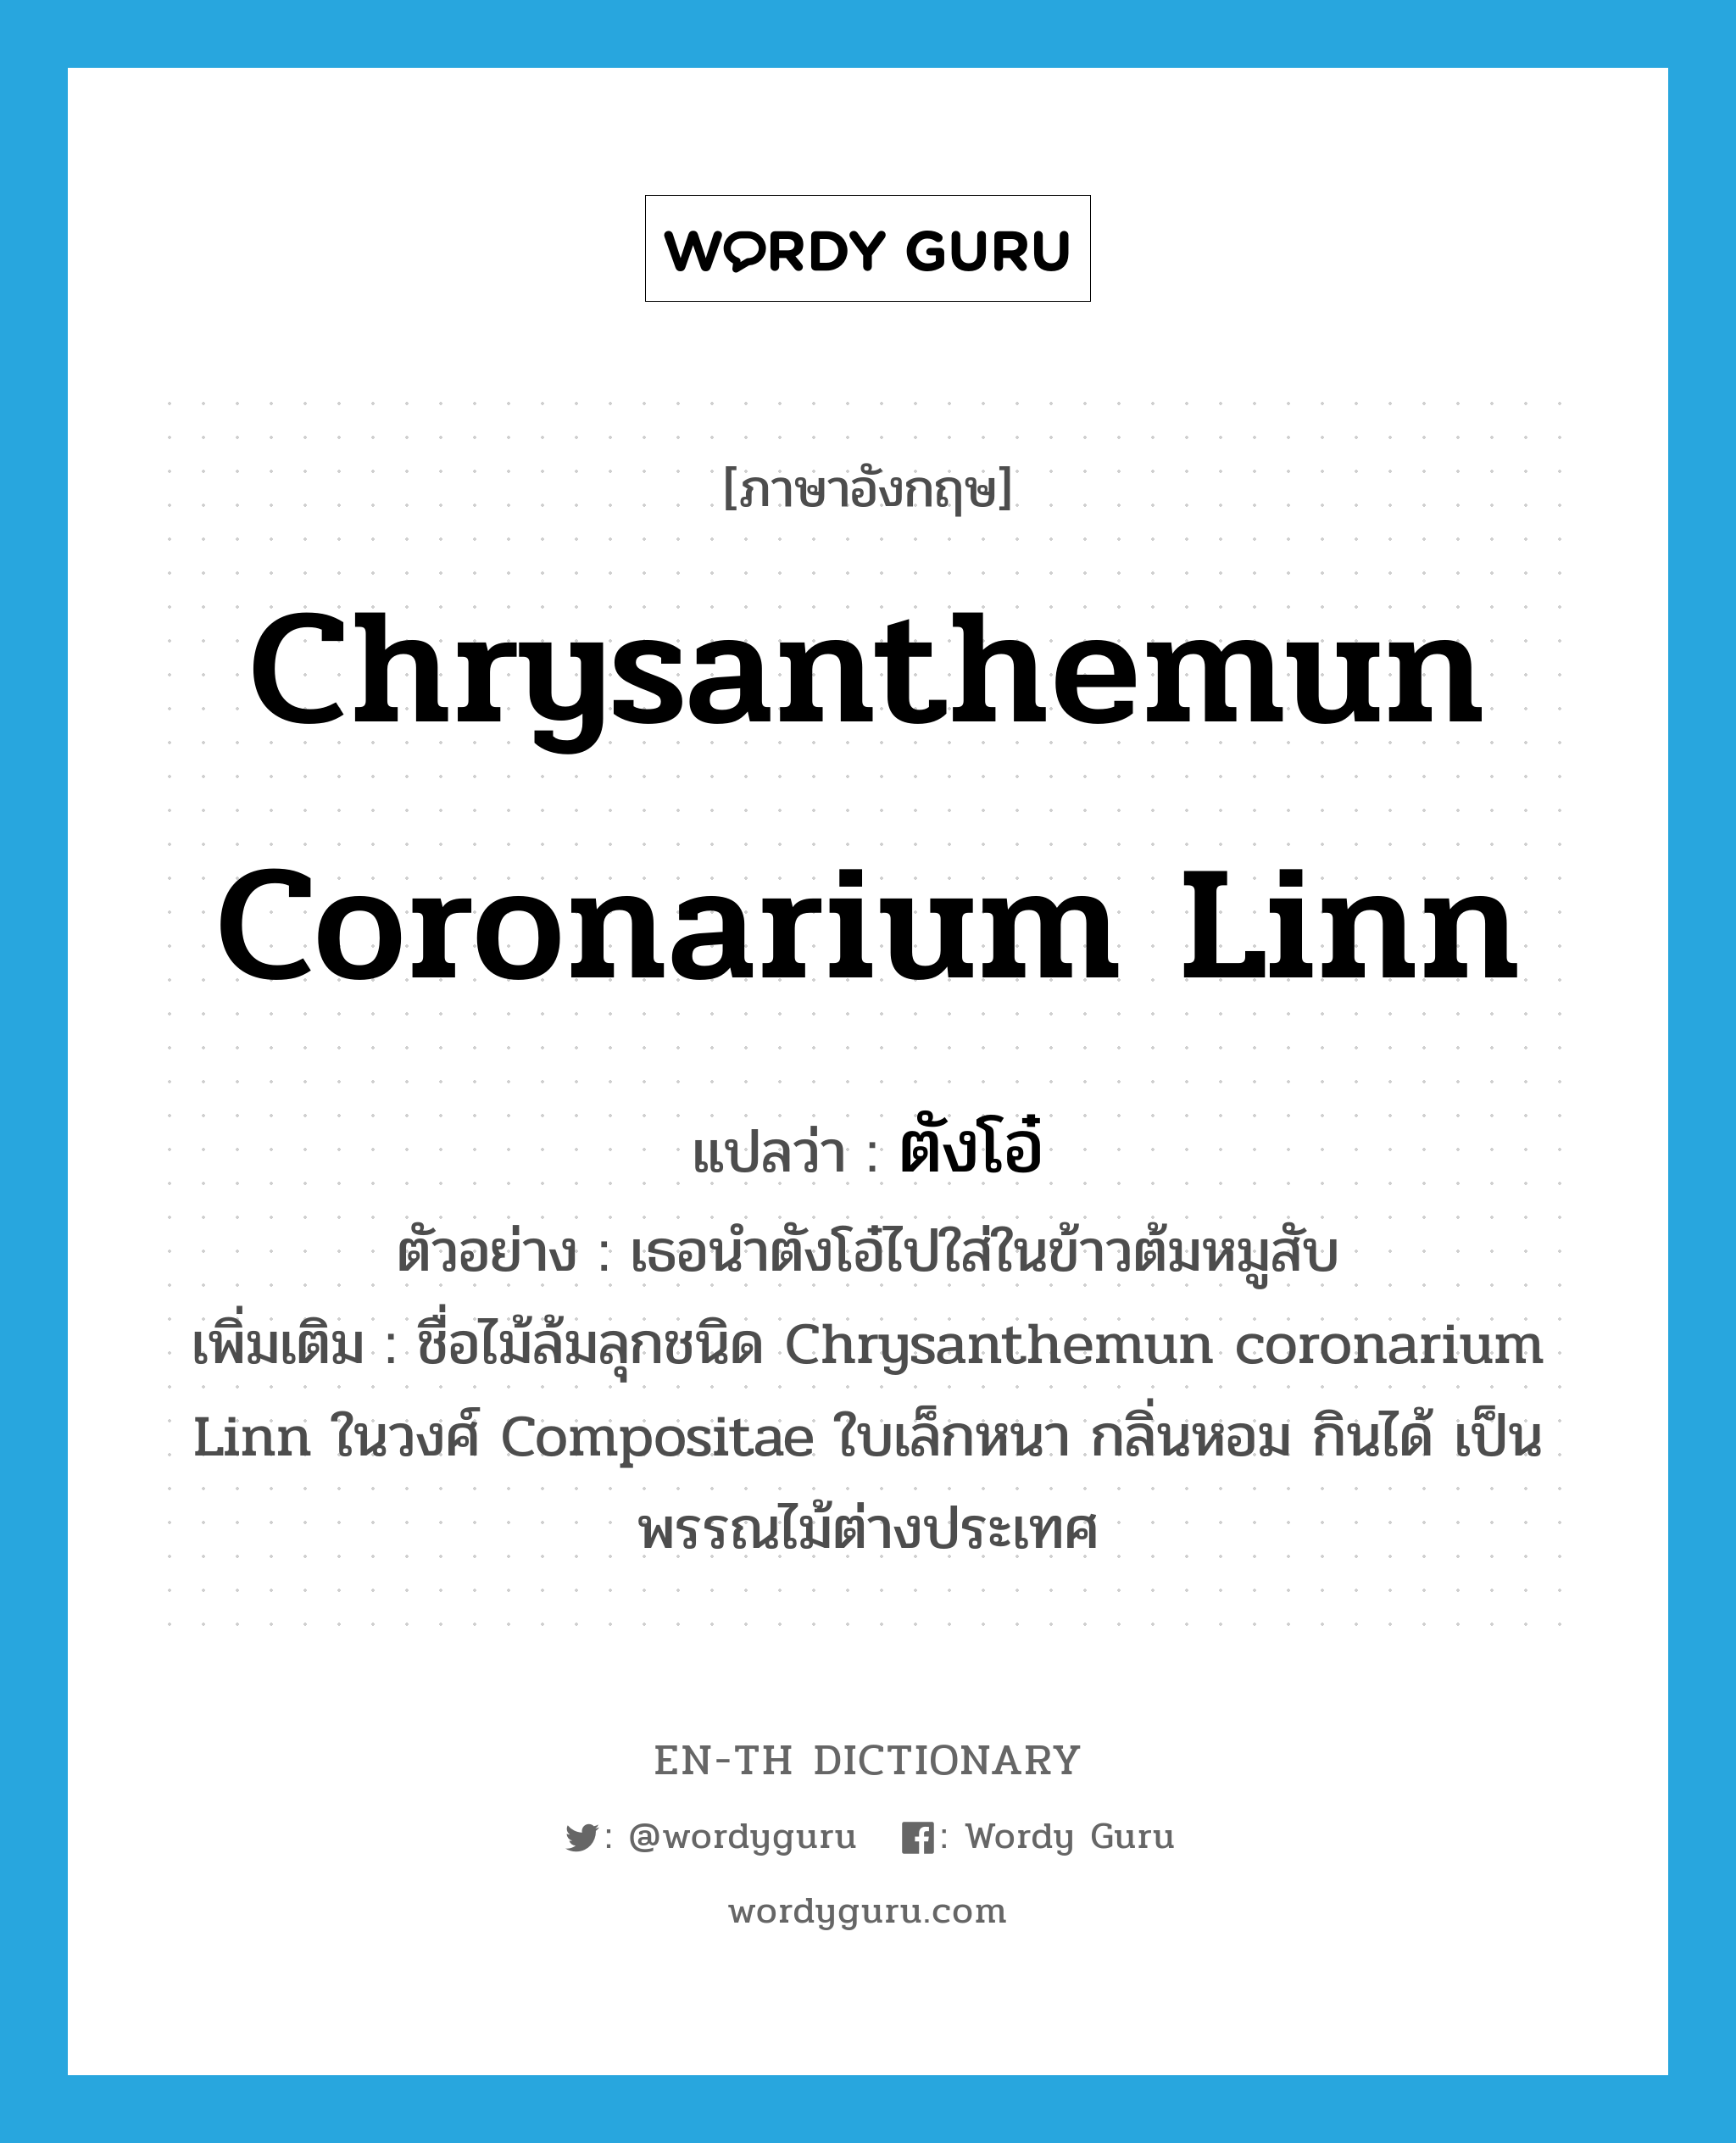 Chrysanthemun coronarium Linn แปลว่า?, คำศัพท์ภาษาอังกฤษ Chrysanthemun coronarium Linn แปลว่า ตังโอ๋ ประเภท N ตัวอย่าง เธอนำตังโอ๋ไปใส่ในข้าวต้มหมูสับ เพิ่มเติม ชื่อไม้ล้มลุกชนิด Chrysanthemun coronarium Linn ในวงศ์ Compositae ใบเล็กหนา กลิ่นหอม กินได้ เป็นพรรณไม้ต่างประเทศ หมวด N